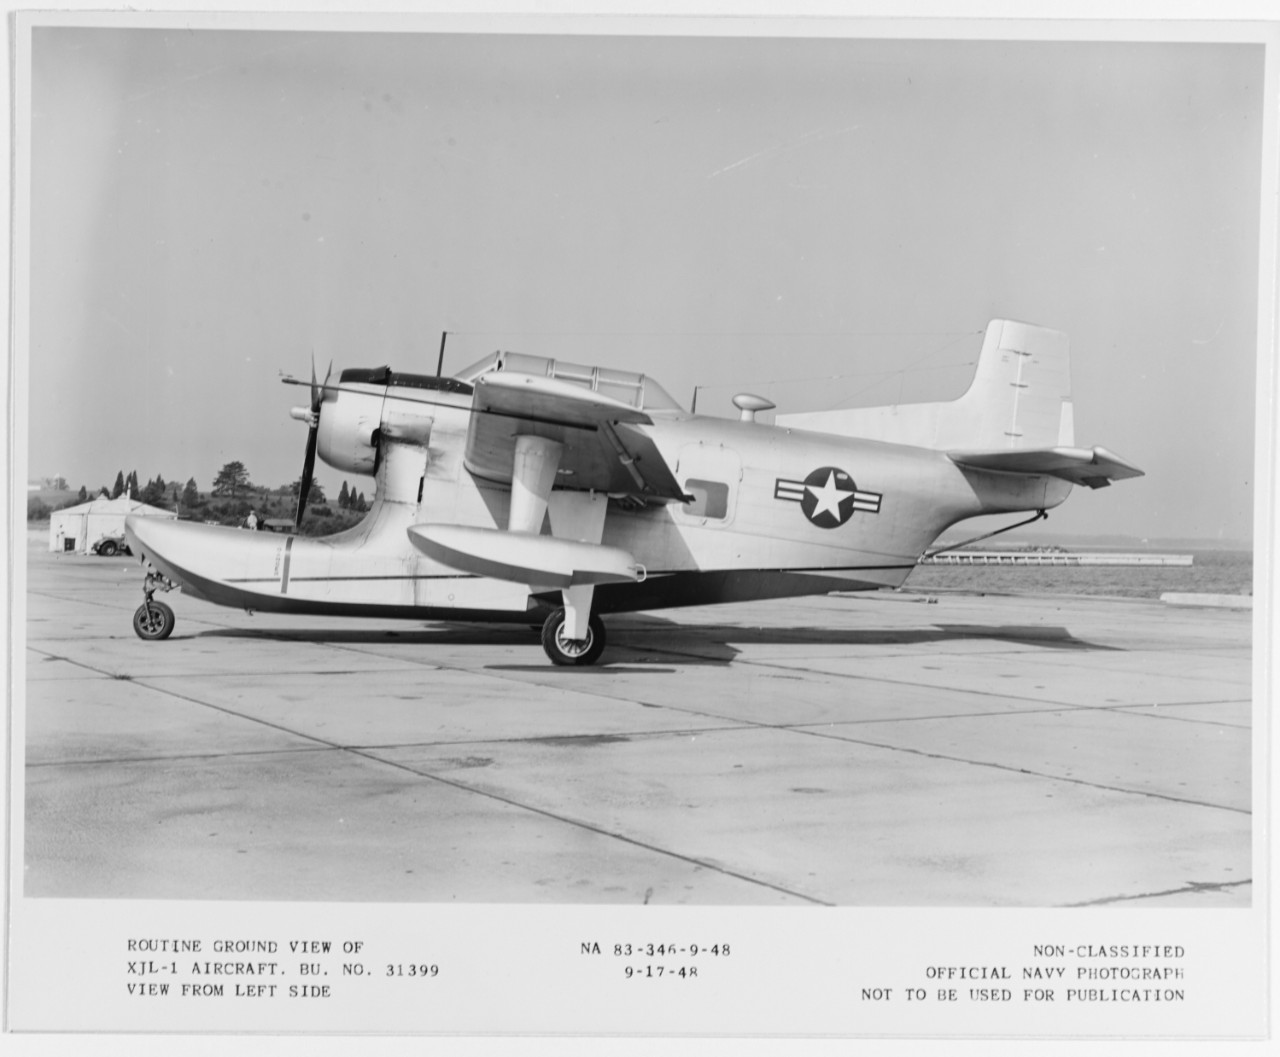 Columbia XJL-1 aircraft (Bu# 31399)